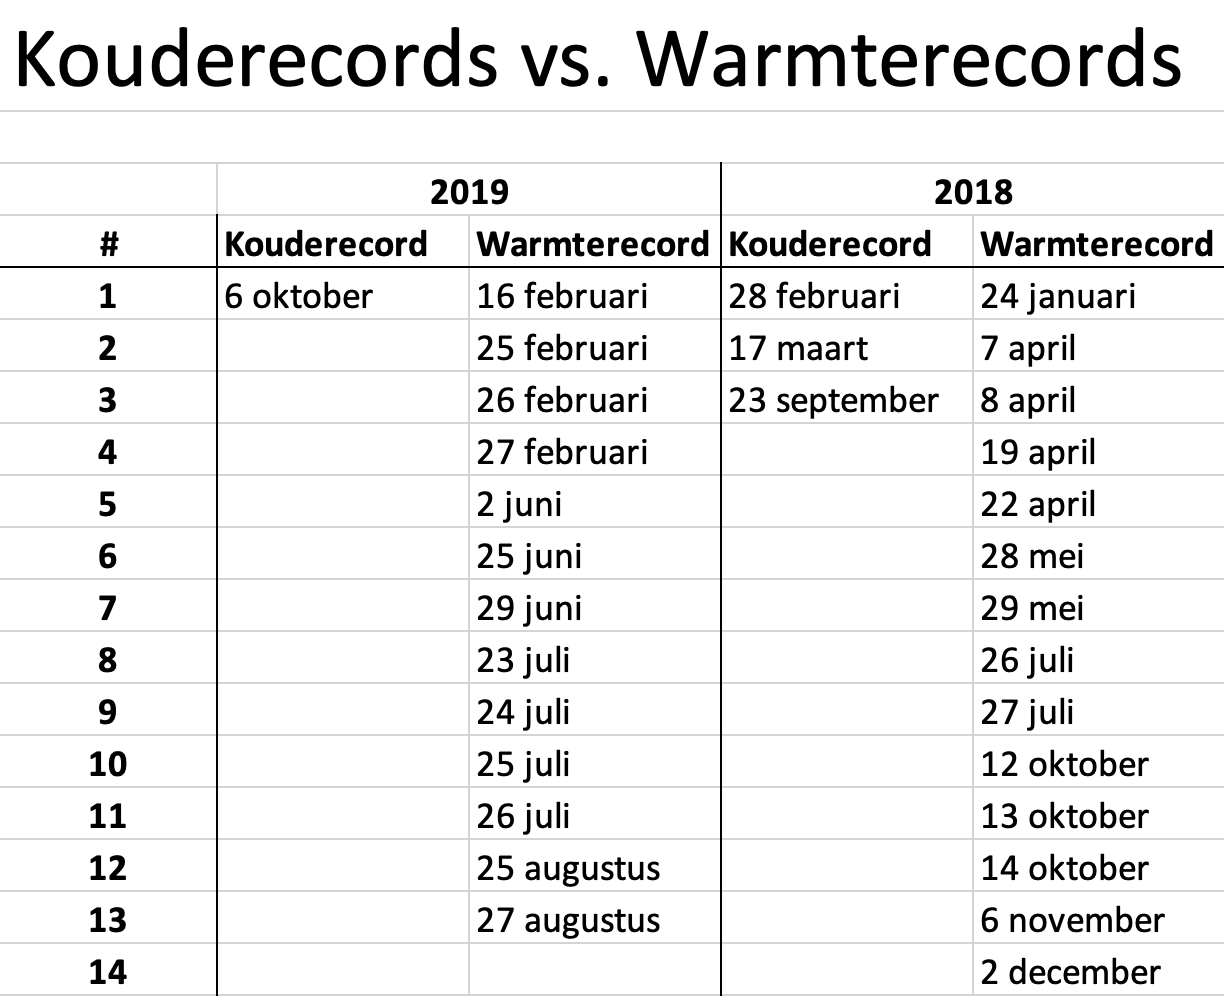 20191006-kouderecords-vs-warmterecords